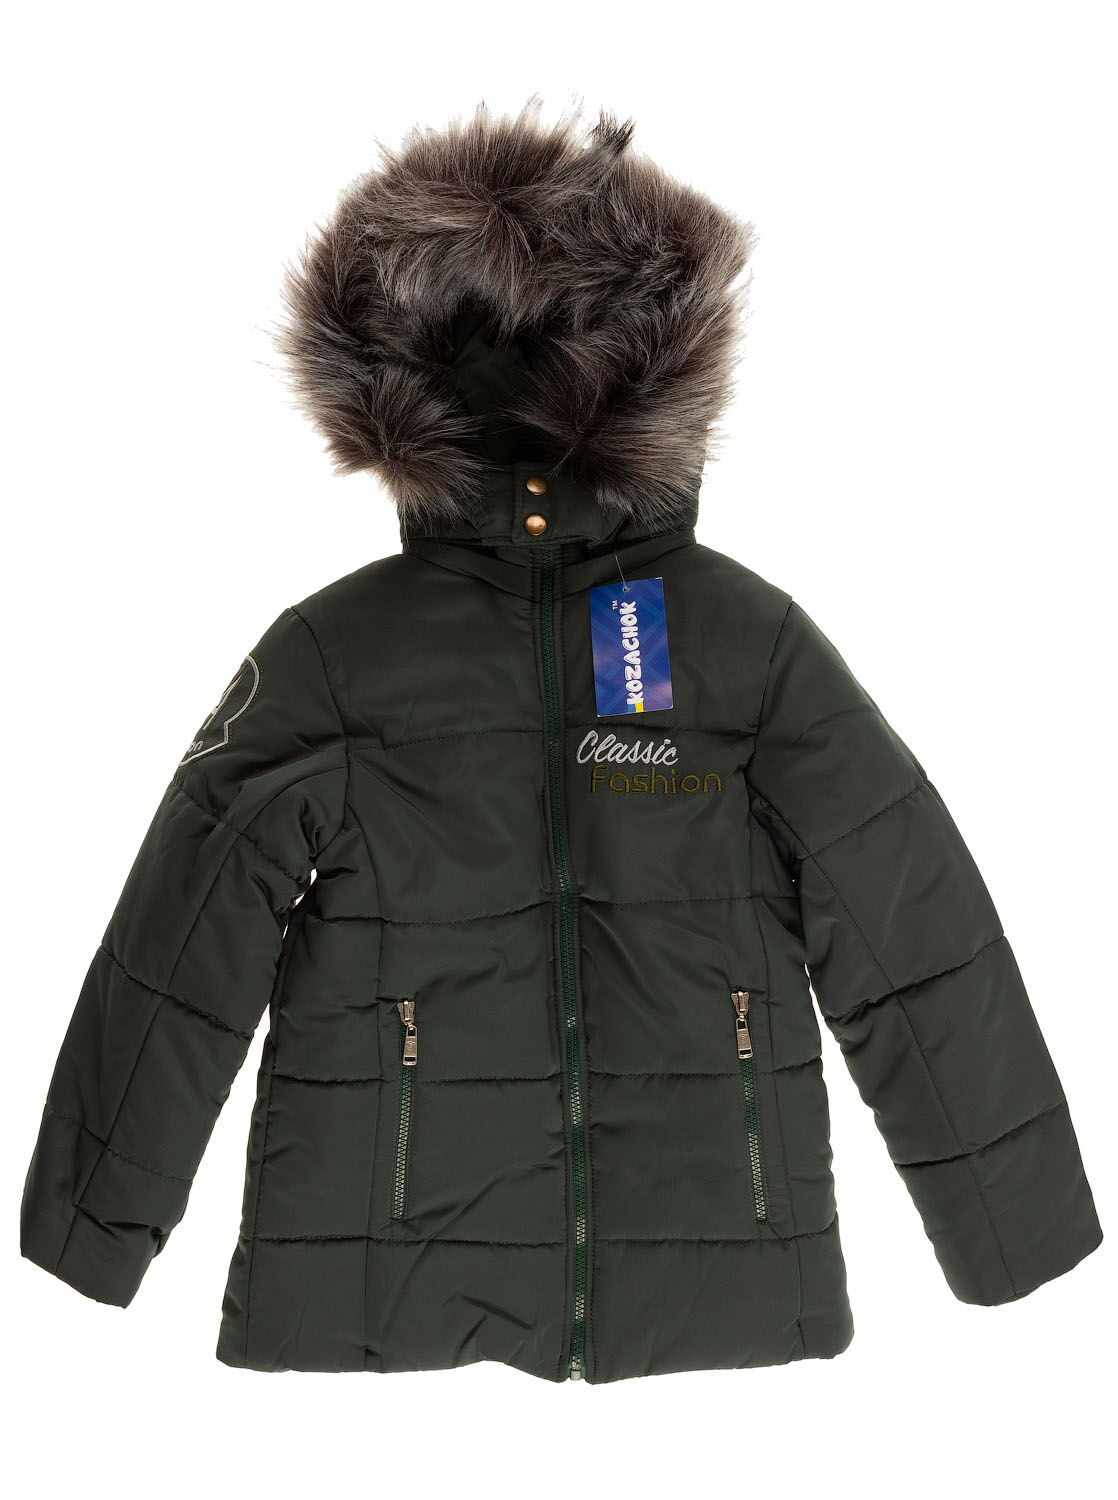 Куртка зимняя для мальчика Kozachok Classic Fashion темно-зеленая - цена